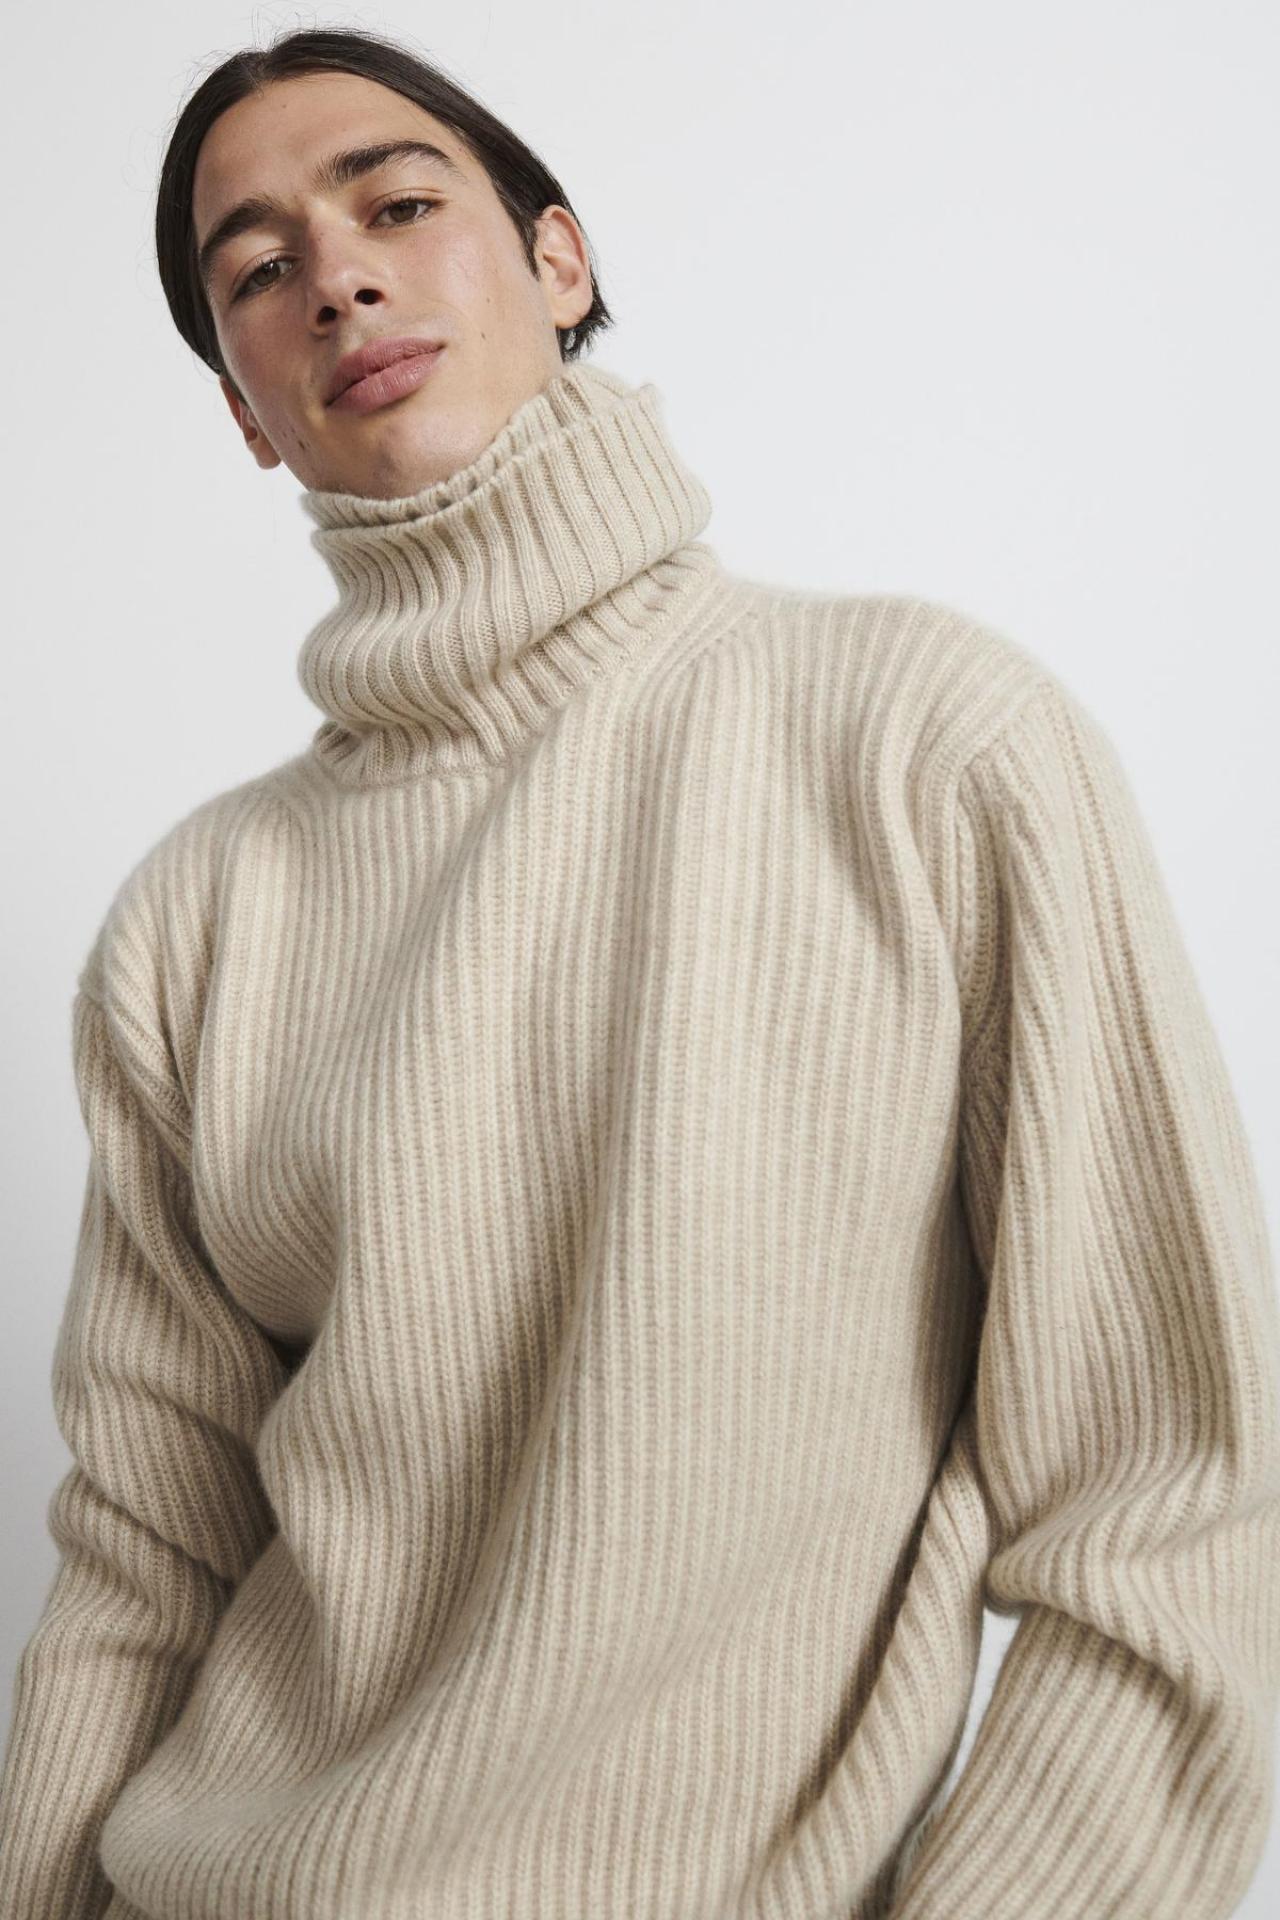 Rechttoe rechtaanTijdloze trui (520 euro), gebreid van Loro Piana-garens in zuiver kasjmier, van het duurzame Spaanse label Shon Mott.